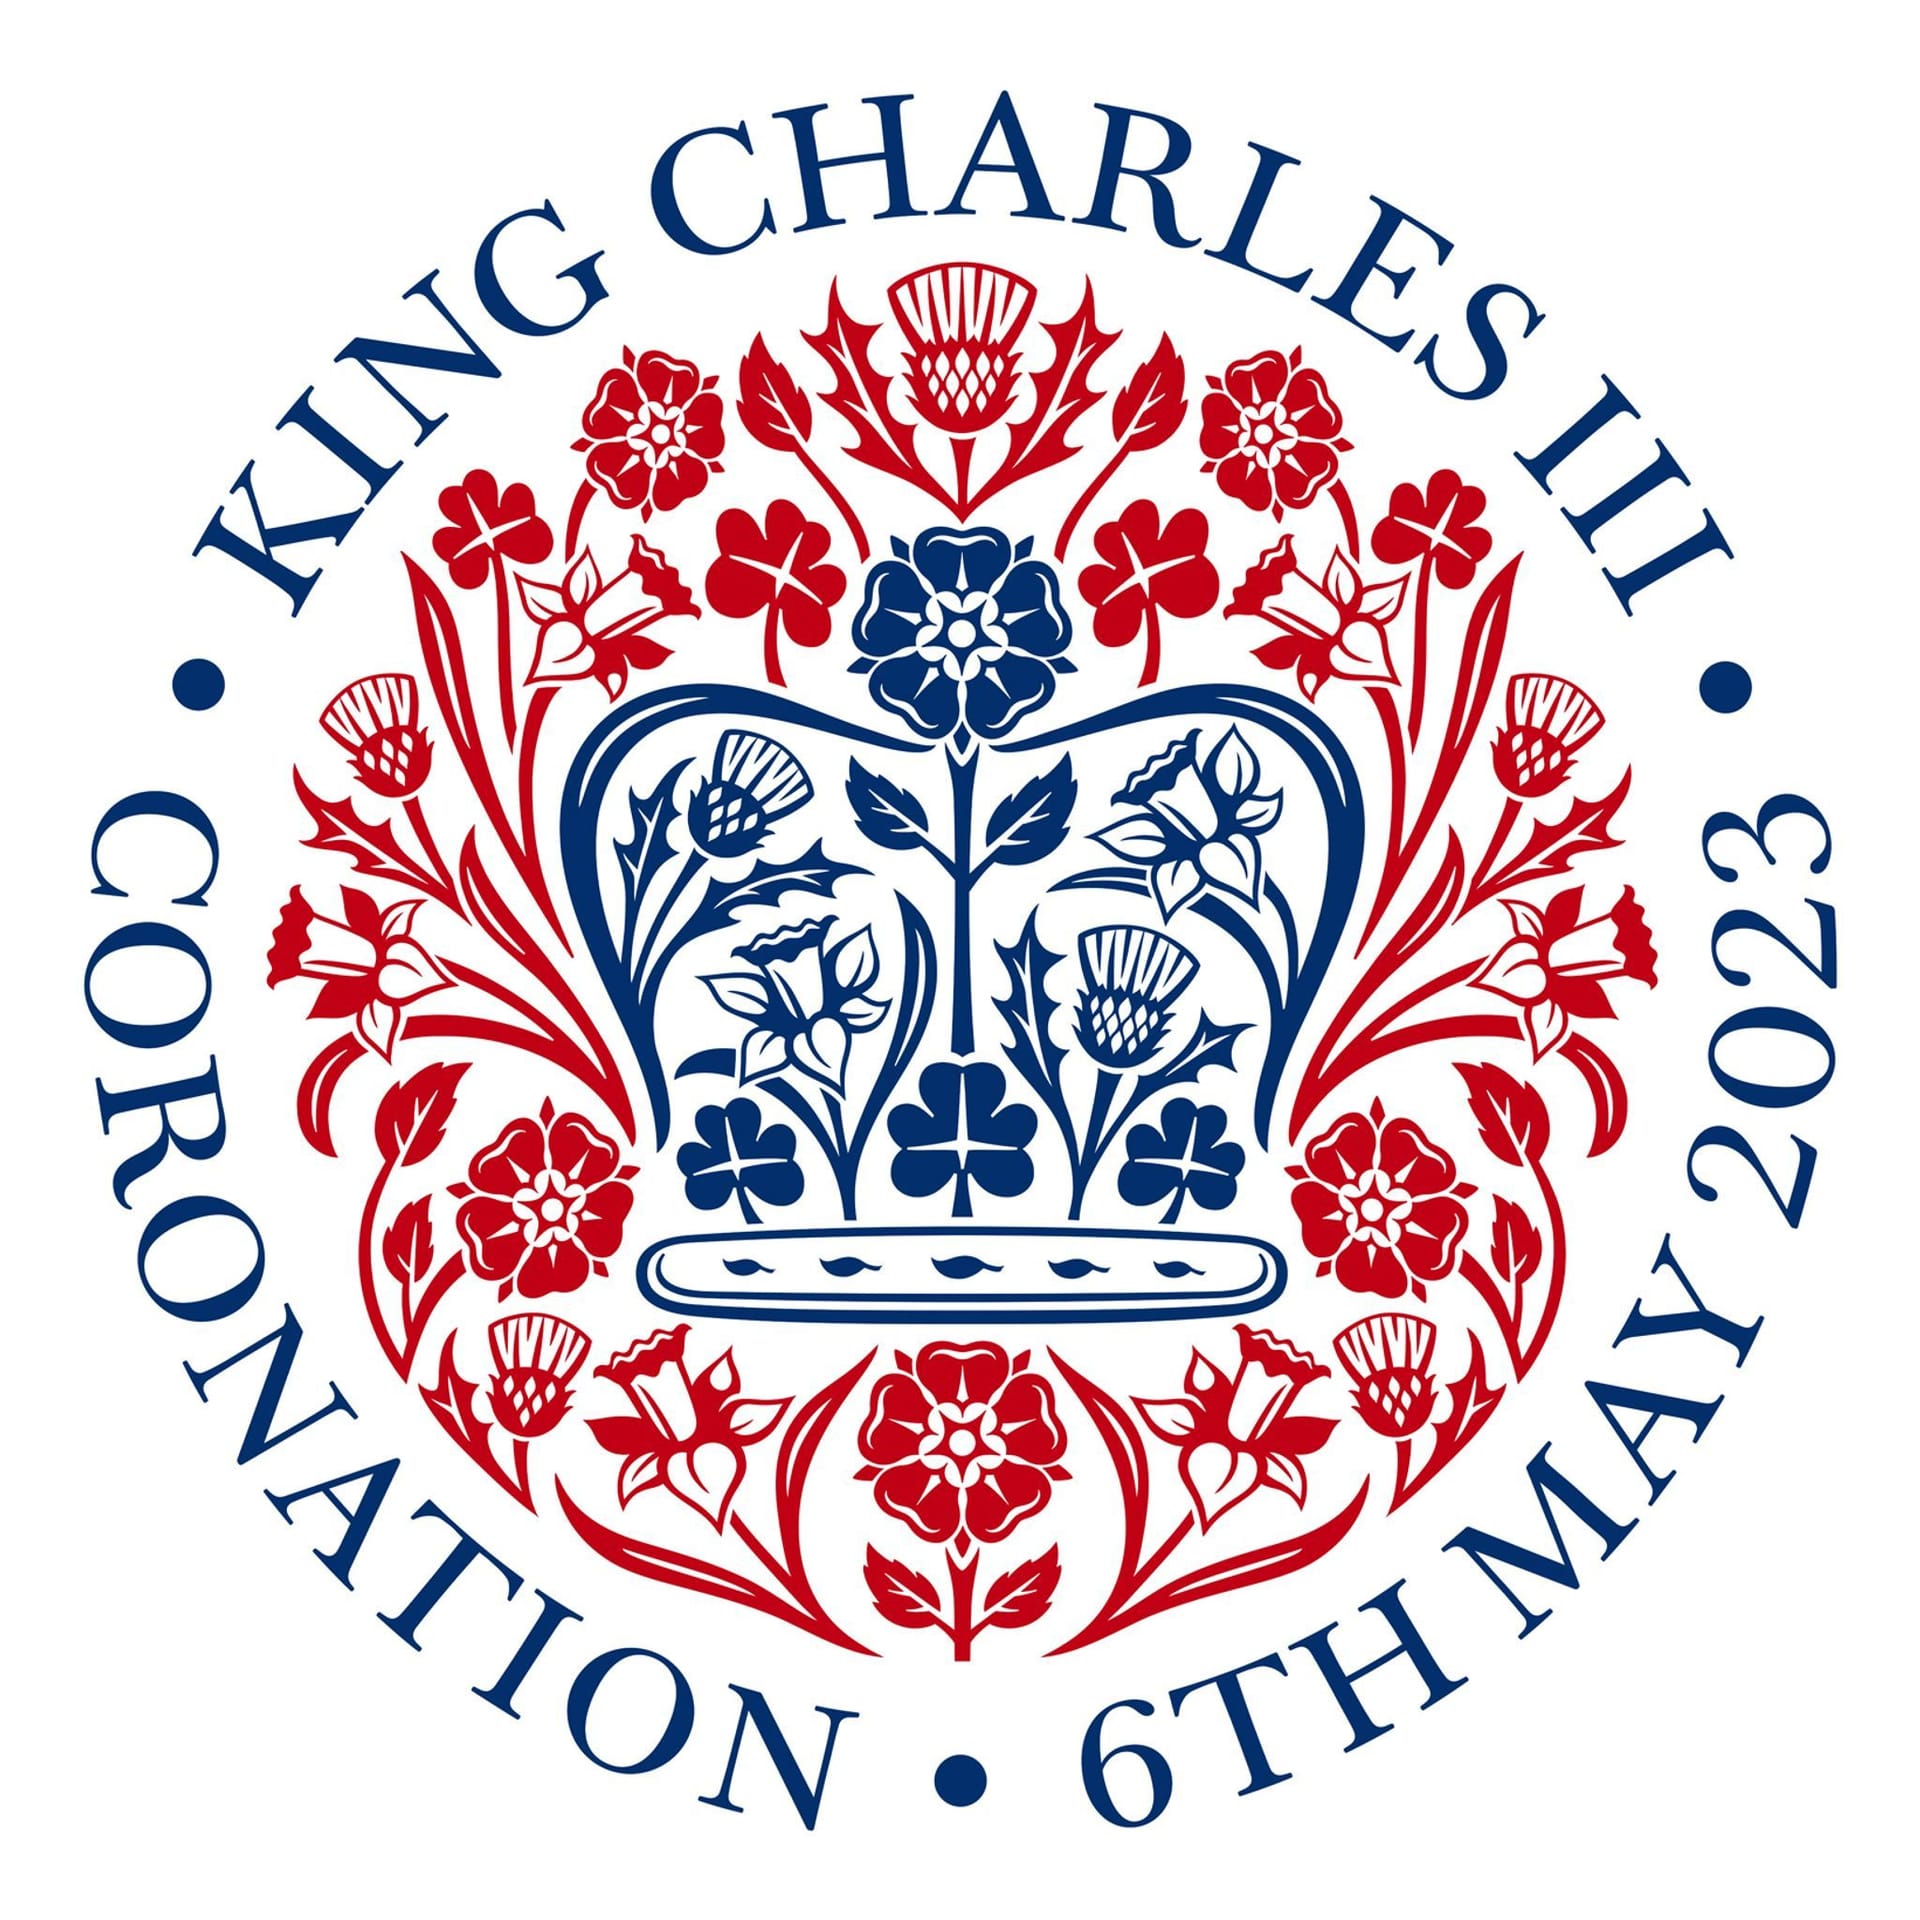 Das offizielle Emblem von König Charles III.